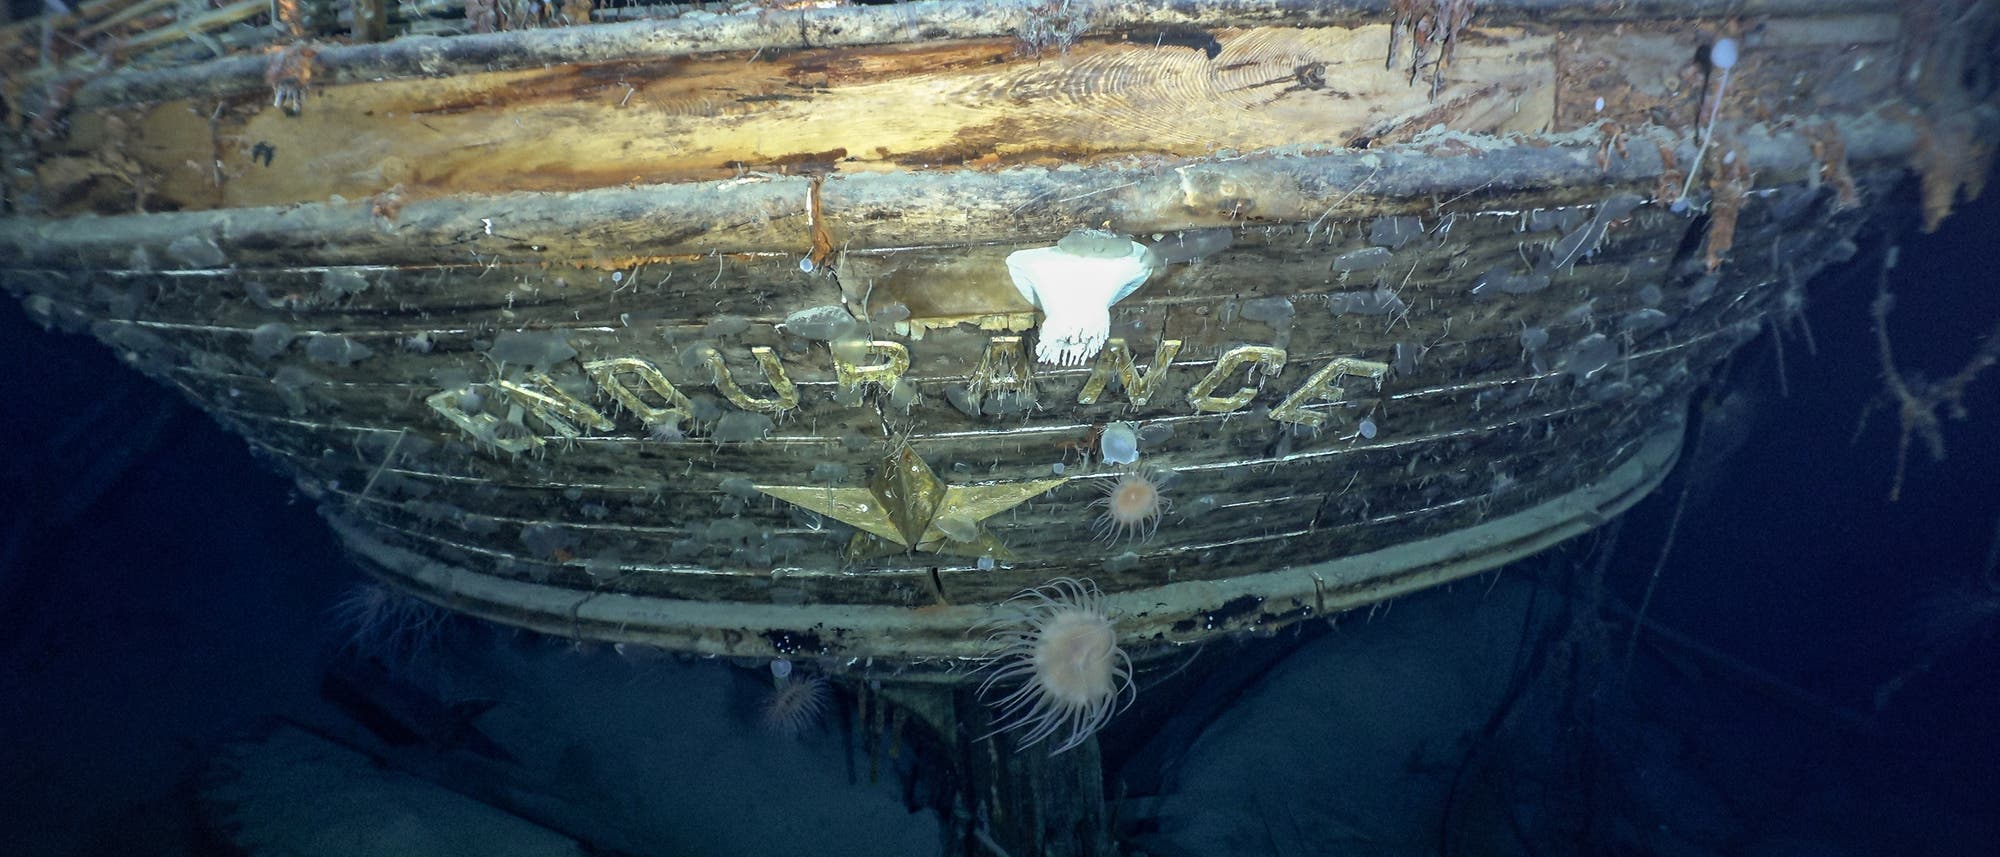 Der Schiffsname am Heck lieferte Gewissheit: Das Expeditionsteam hat tatsächlich die Endurance aufgespürt. Mit einem Tauchroboter steuerte es das Wrack in der Tiefe des Weddellmeers an.